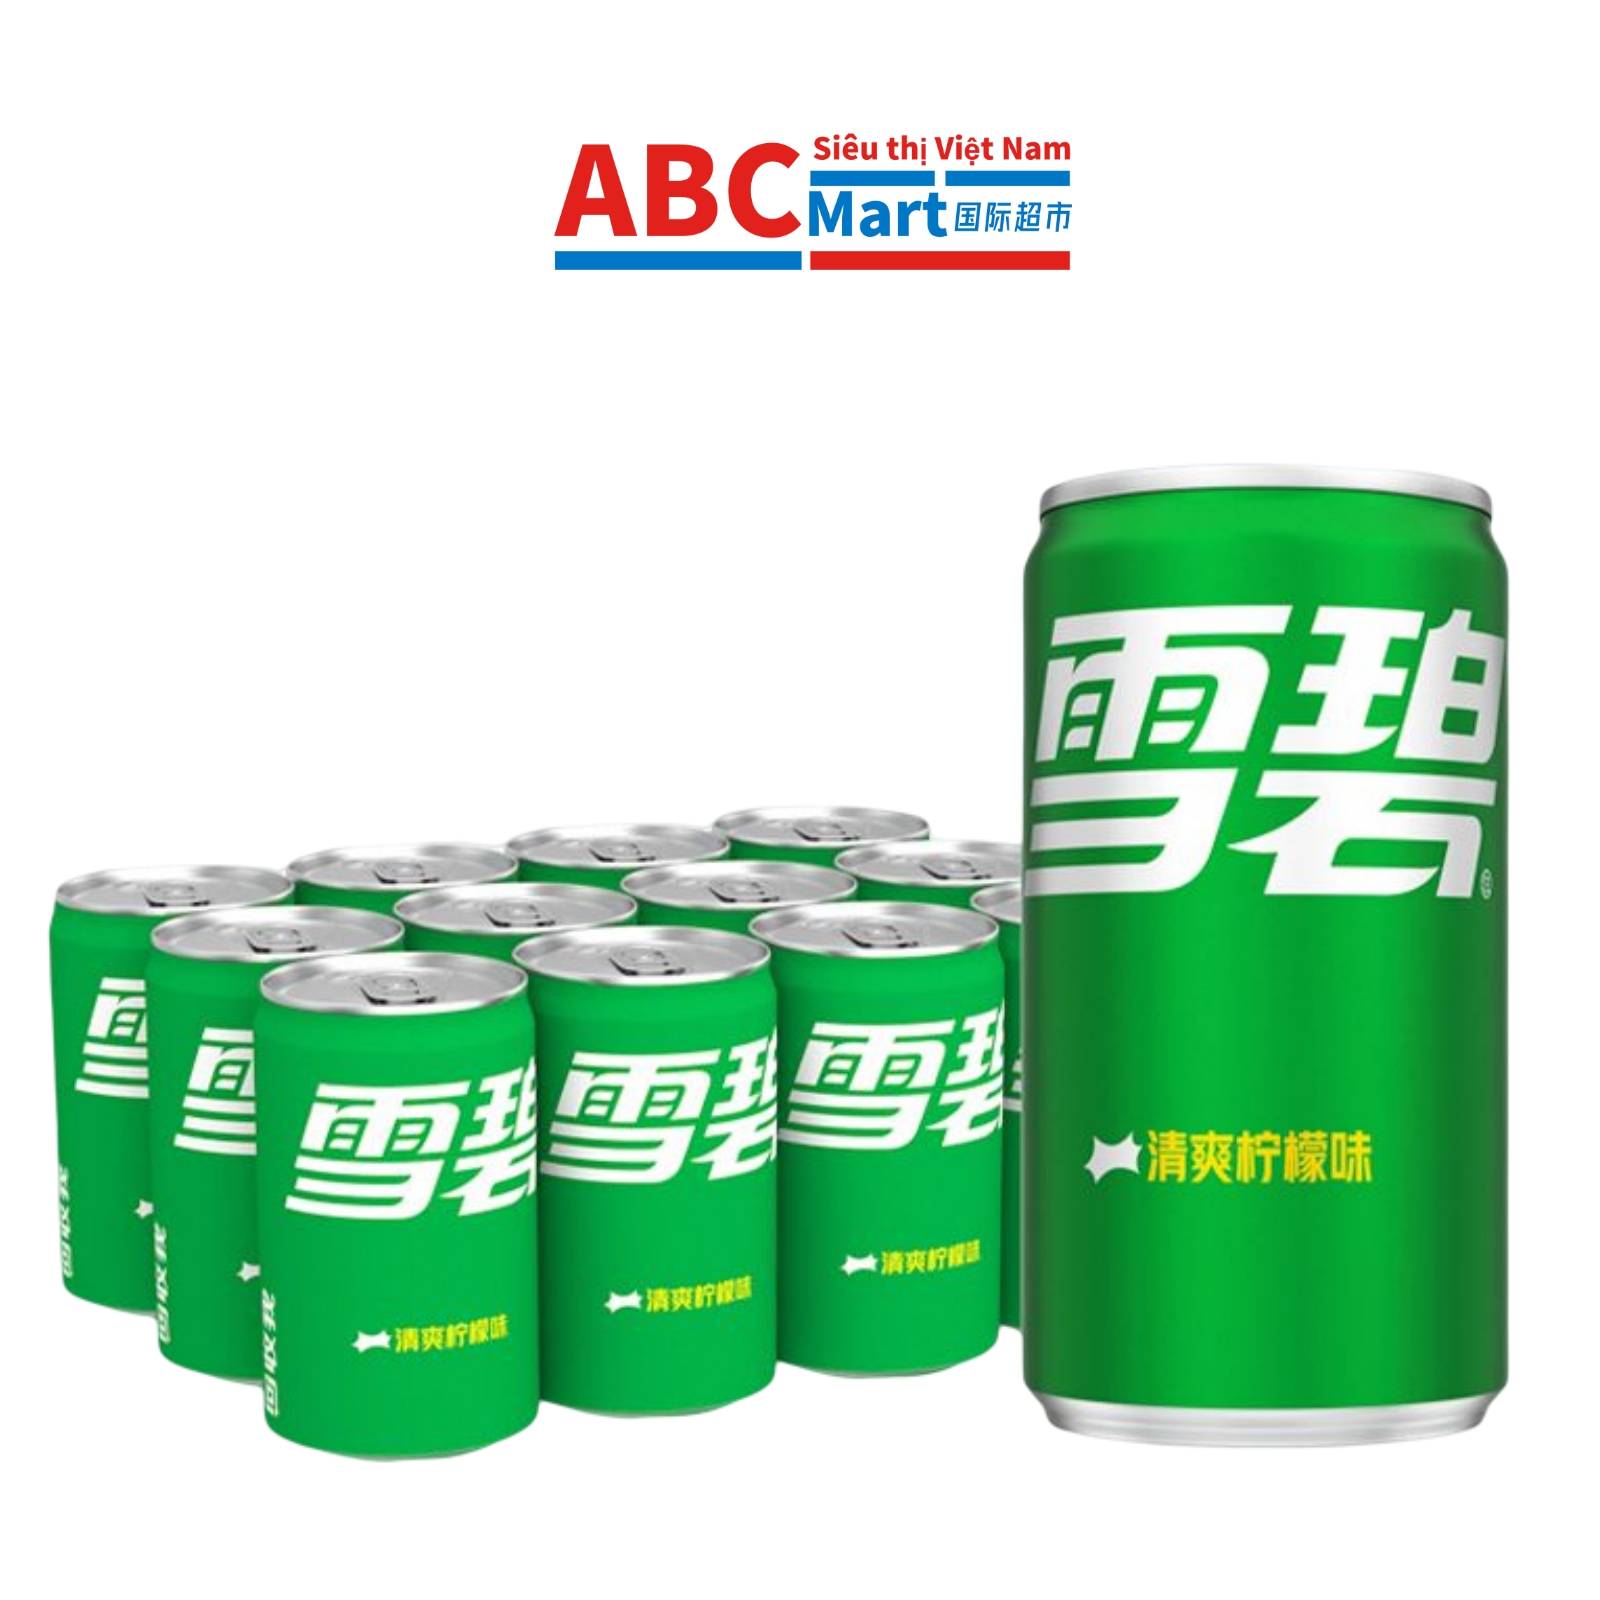 【中国-雪碧碳酸饮料330ml】整箱24罐汽水经典柠檬口味汽水-ABCMart 国际超市